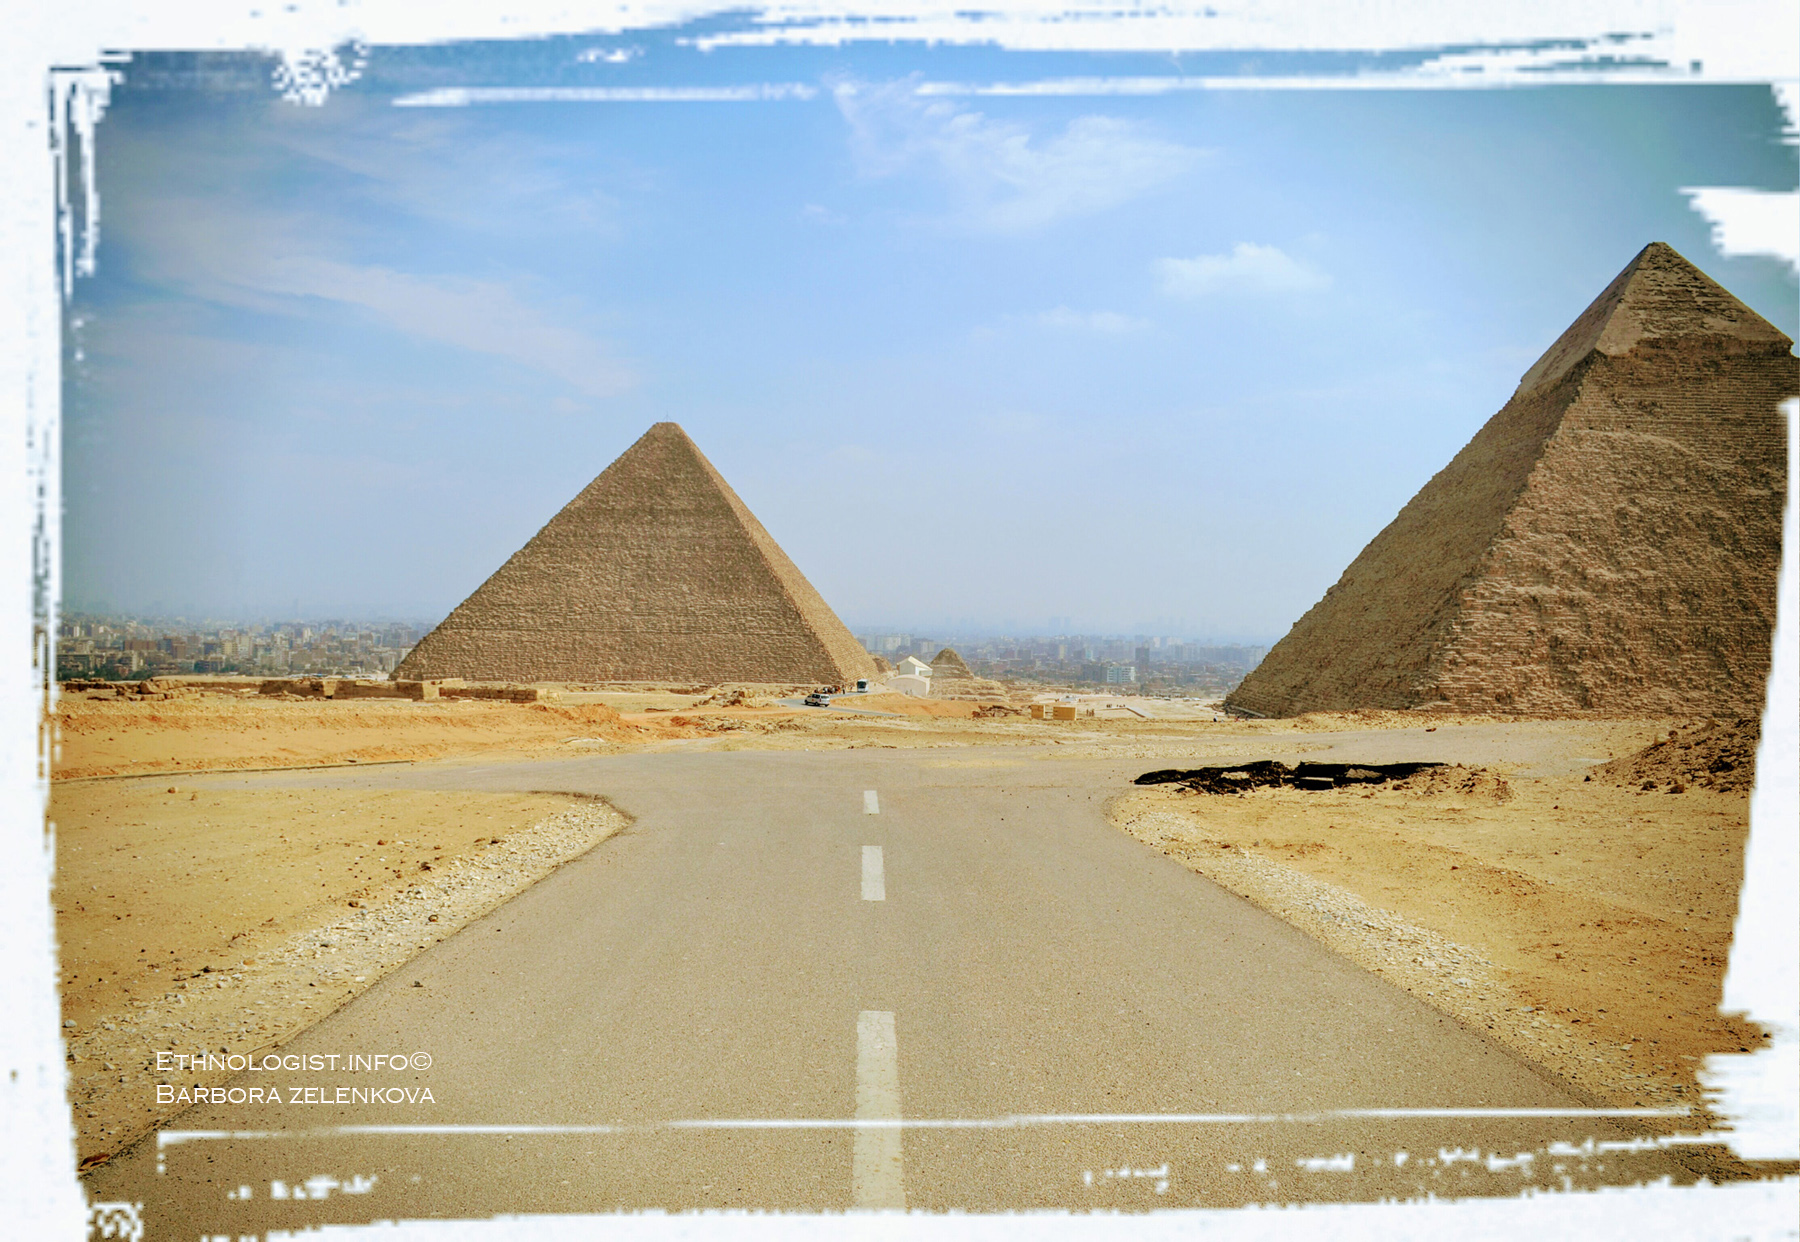 Jiný pohled na pyramidy v Gíze ukazuje hustou zástavbu, jež je obklopuje. Foto: Barbora Zelenková, 2011.